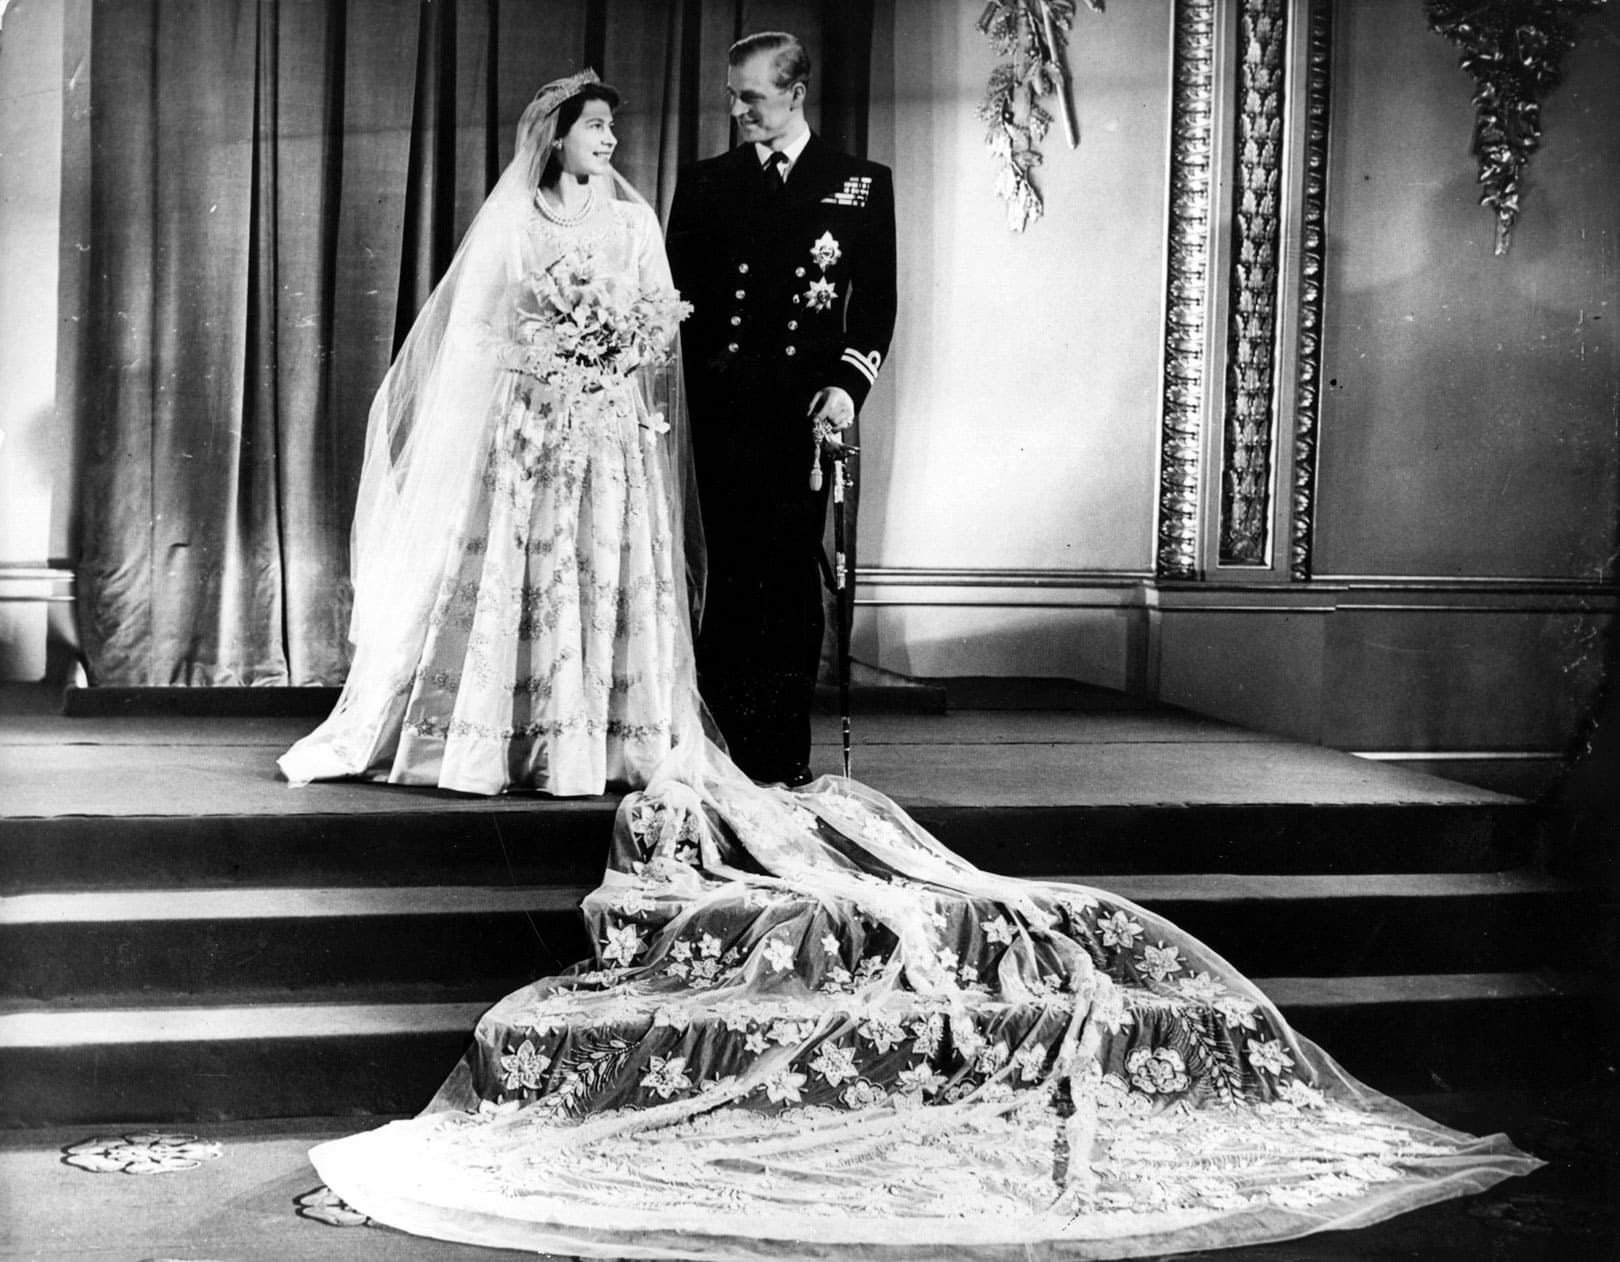 Queen Elizabeth II’s wedding dress